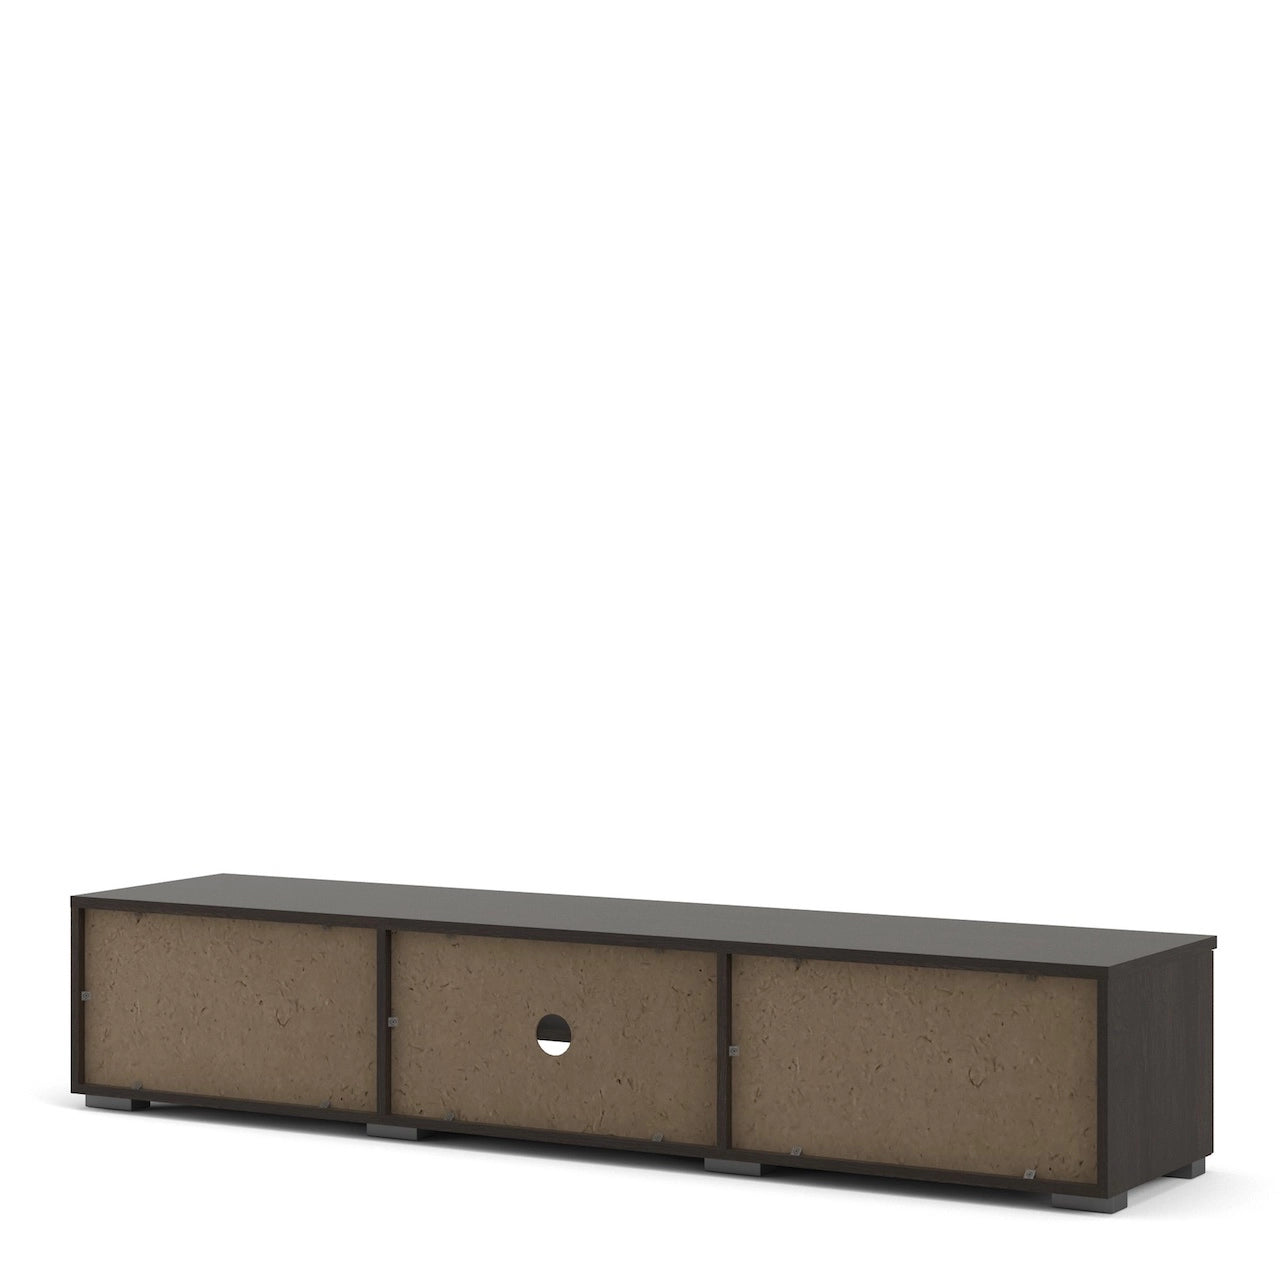 Furniture To Go Match TV Unit 2 Drawers 2 Shelf in Rovere Gessato Dark Oak